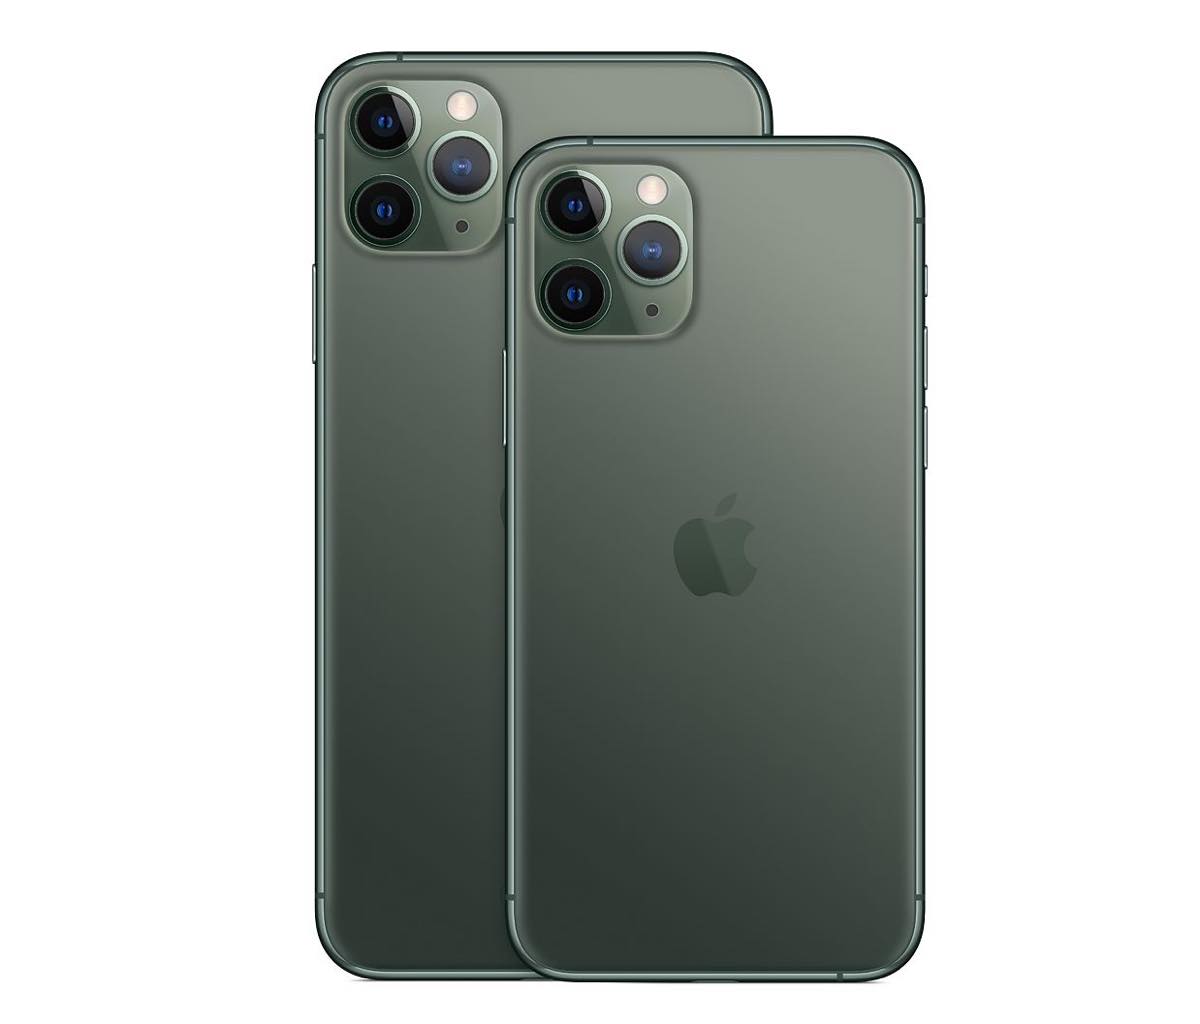 iPhone 11 Pro ミッドナイトグリーン 64 GB docomo